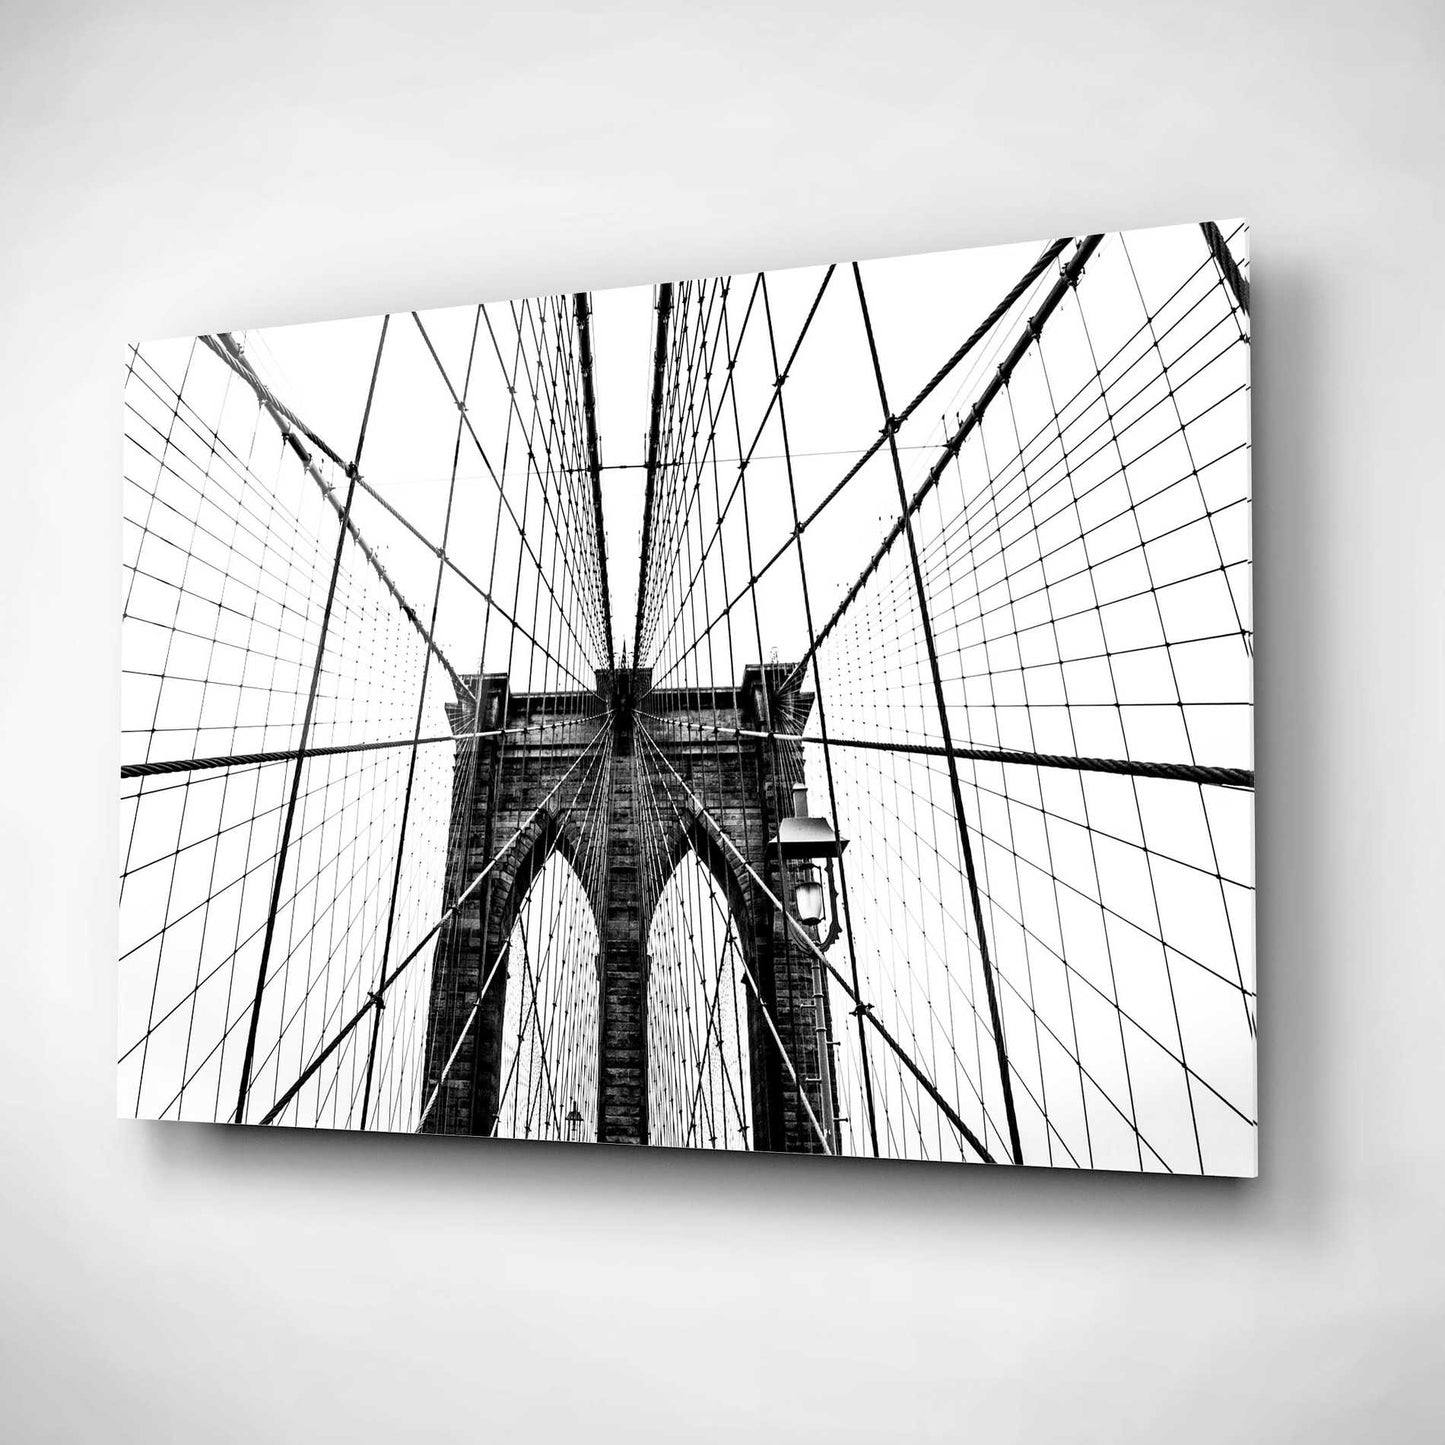 Epic Art 'Brooklyn Bridge Web' by Nicklas Gustafsson Acrylic Glass Wall Art,16x12